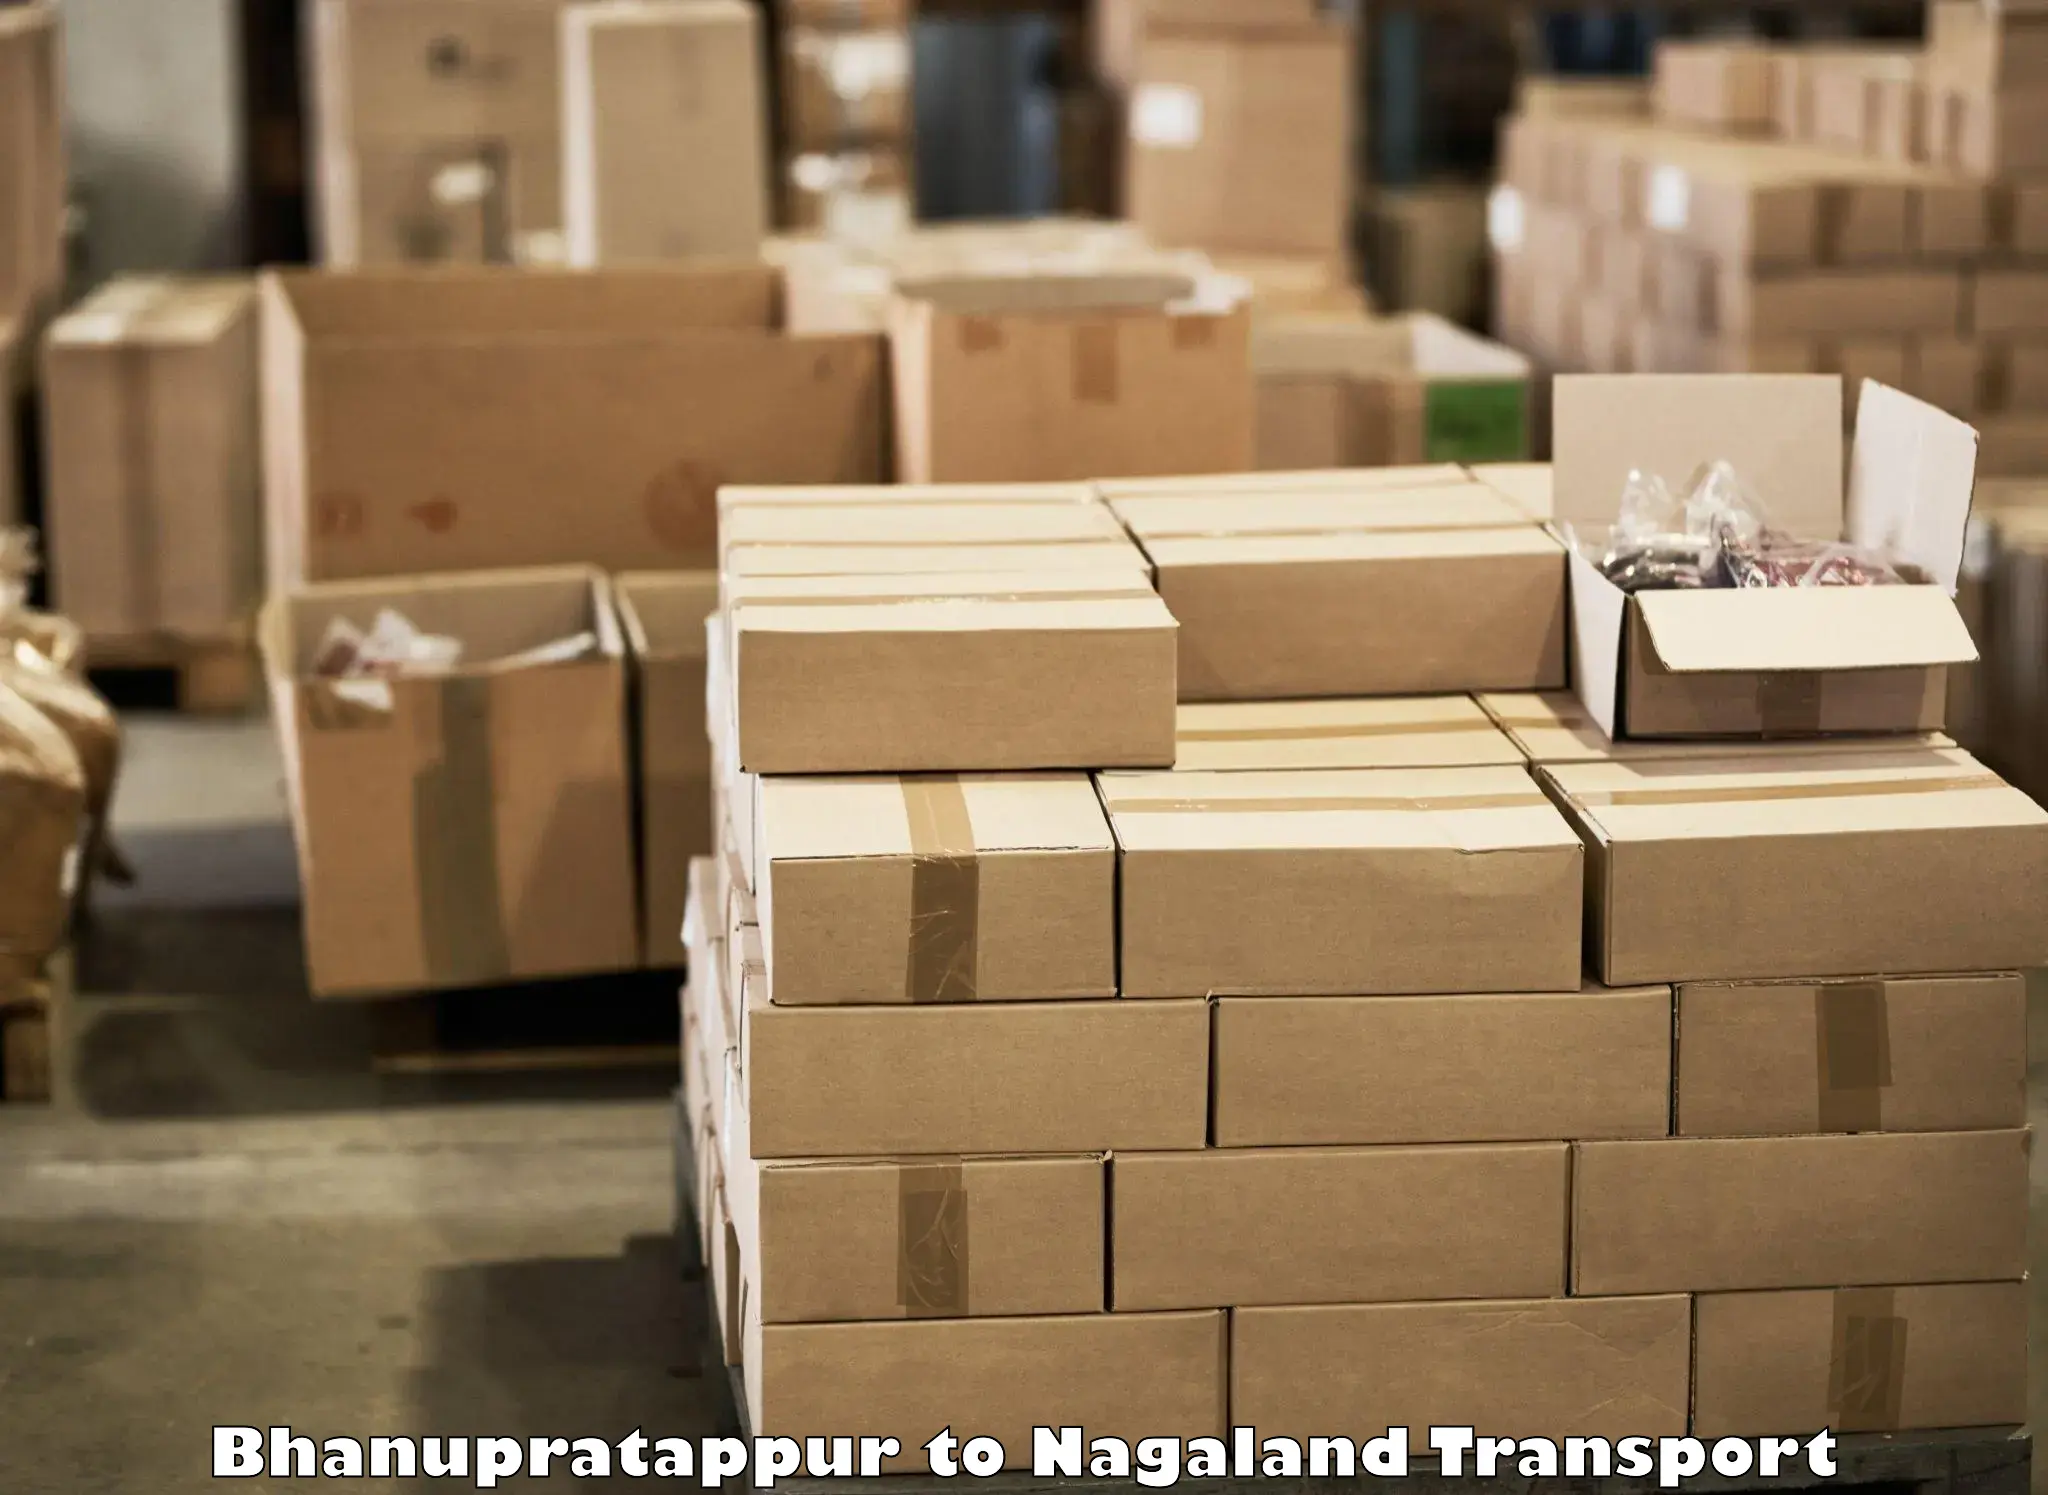 Furniture transport service in Bhanupratappur to Chumukedima